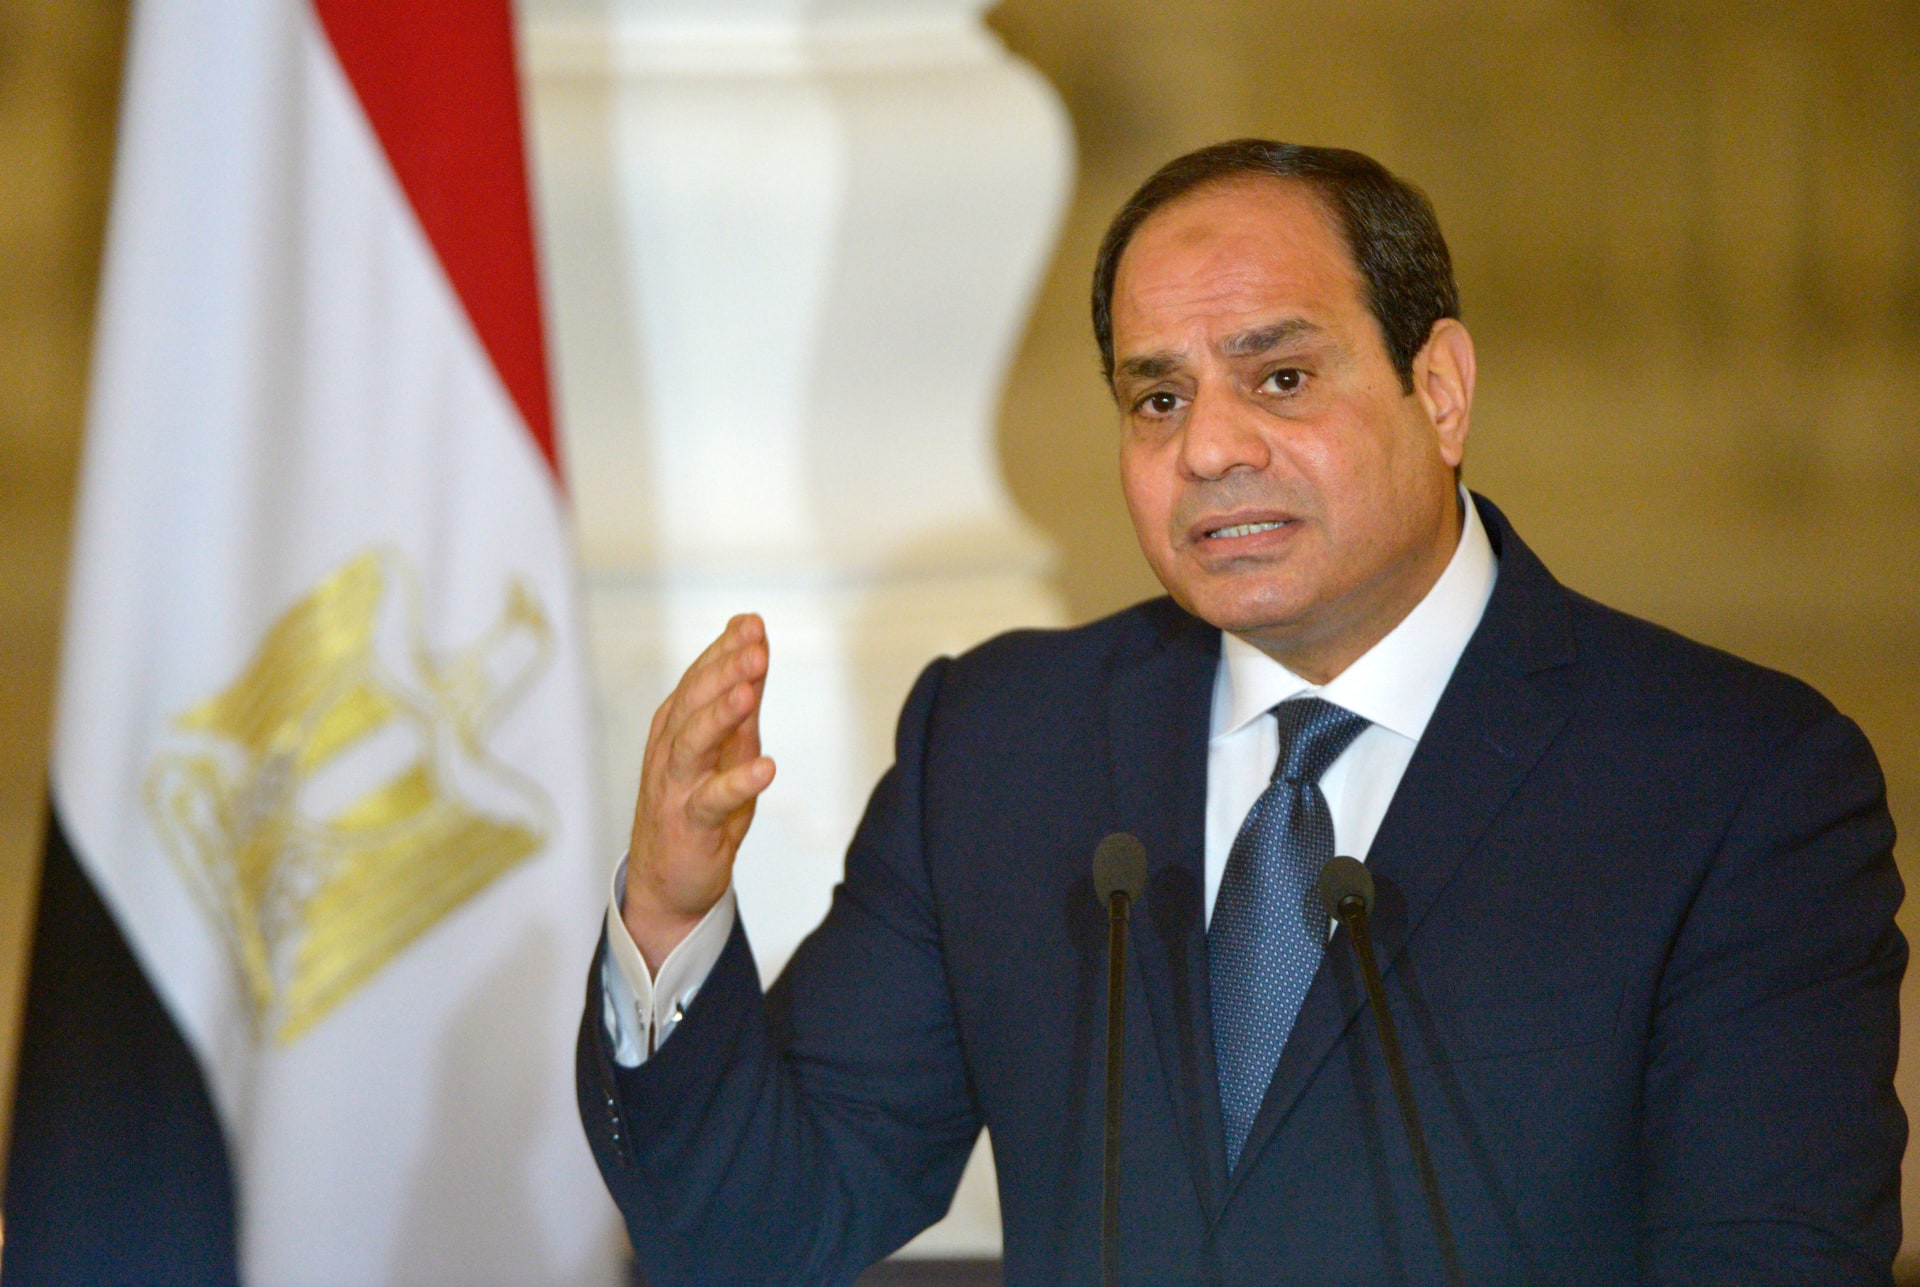 مصر: قطع العلاقات مع قطر بعد تدخلات تهدد الأمن القومي العربي